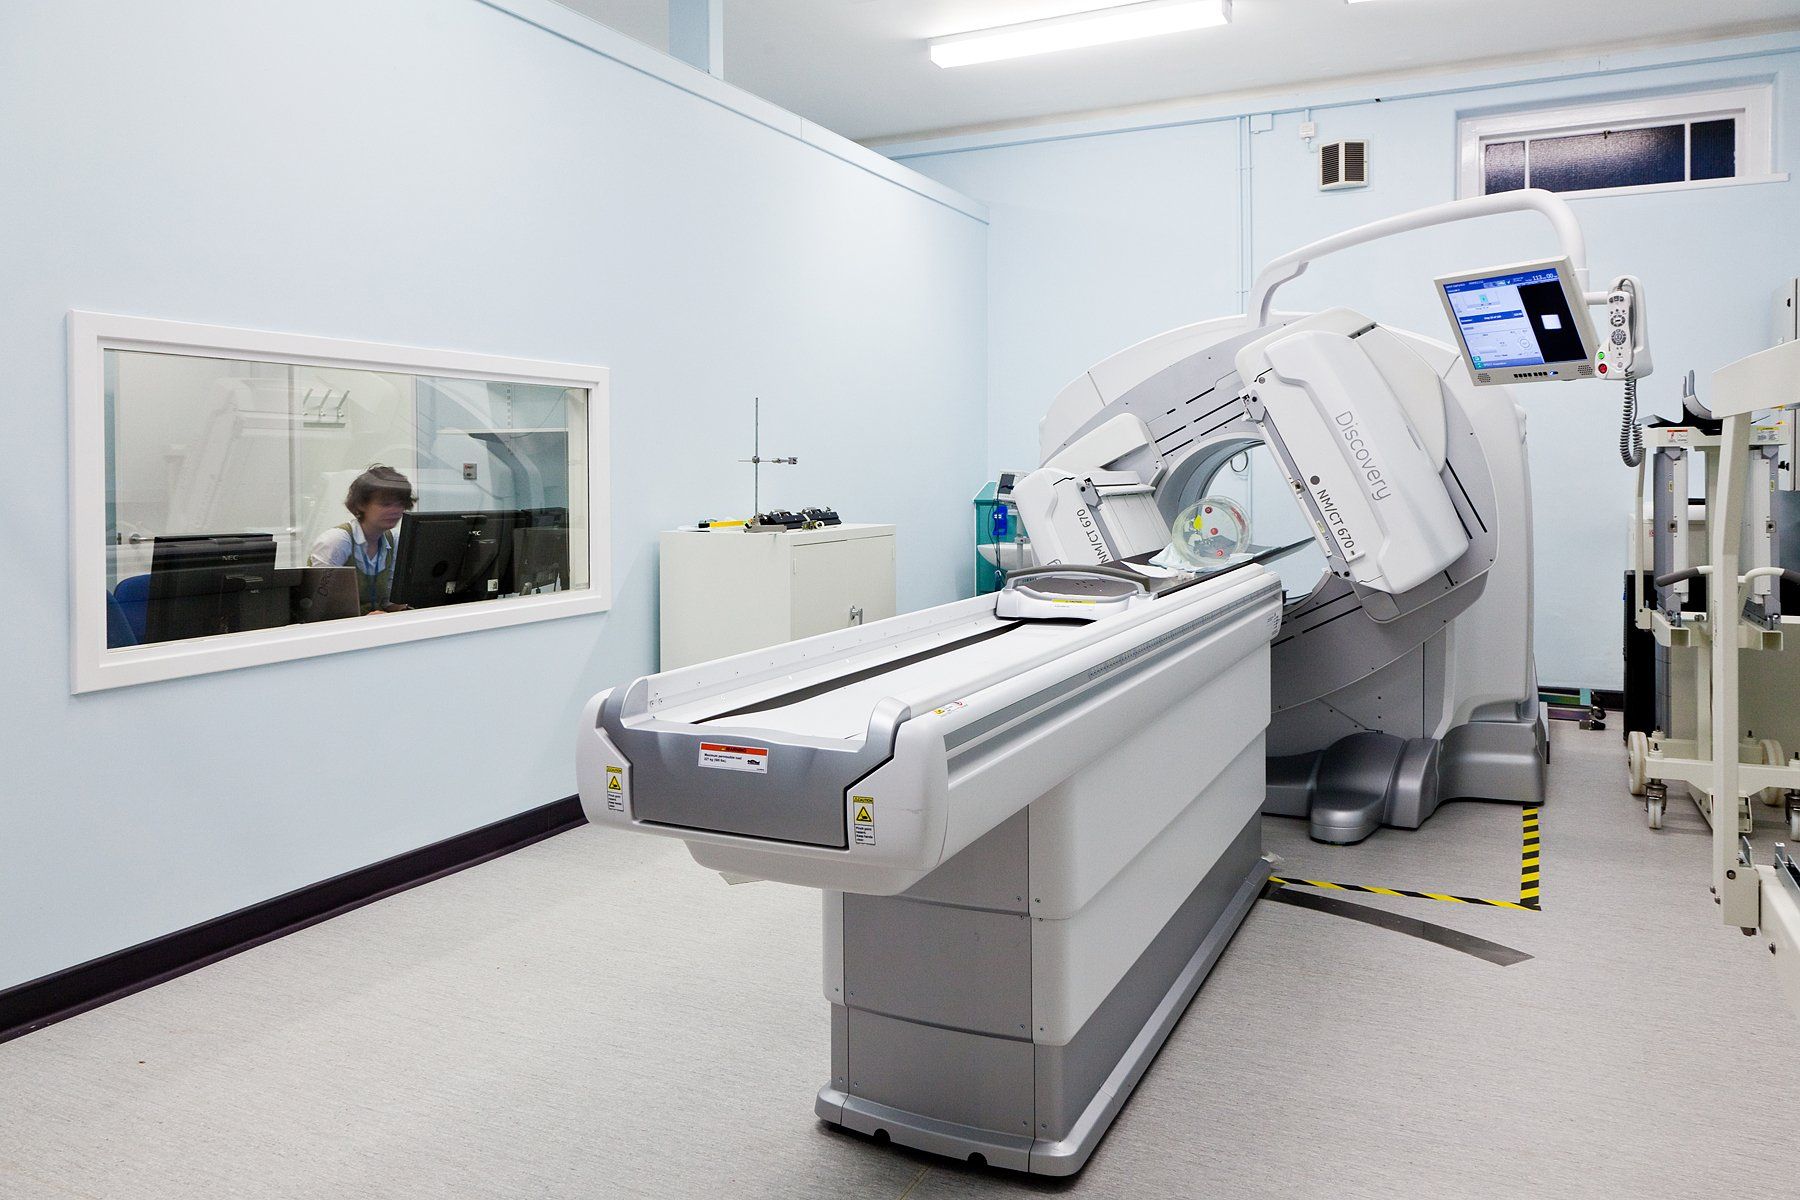 Royal United Hospital  Gamma Camera Pre Installation Works - Nuclear Medical Department Bath